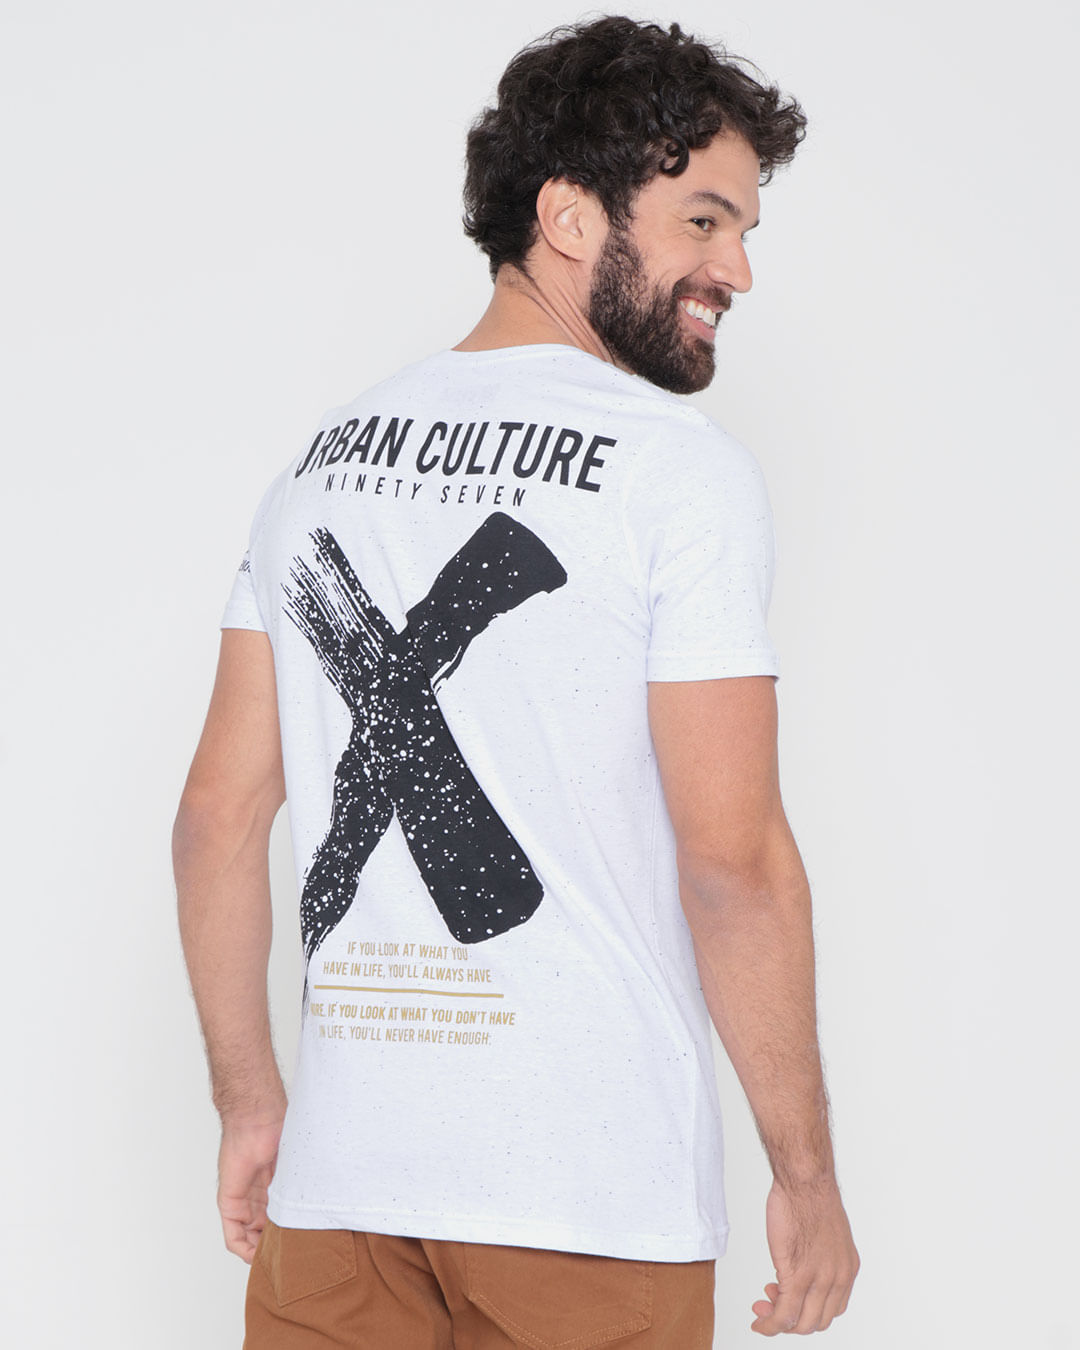 Camiseta-Botone-Estampa-Urban-Culture-Branca